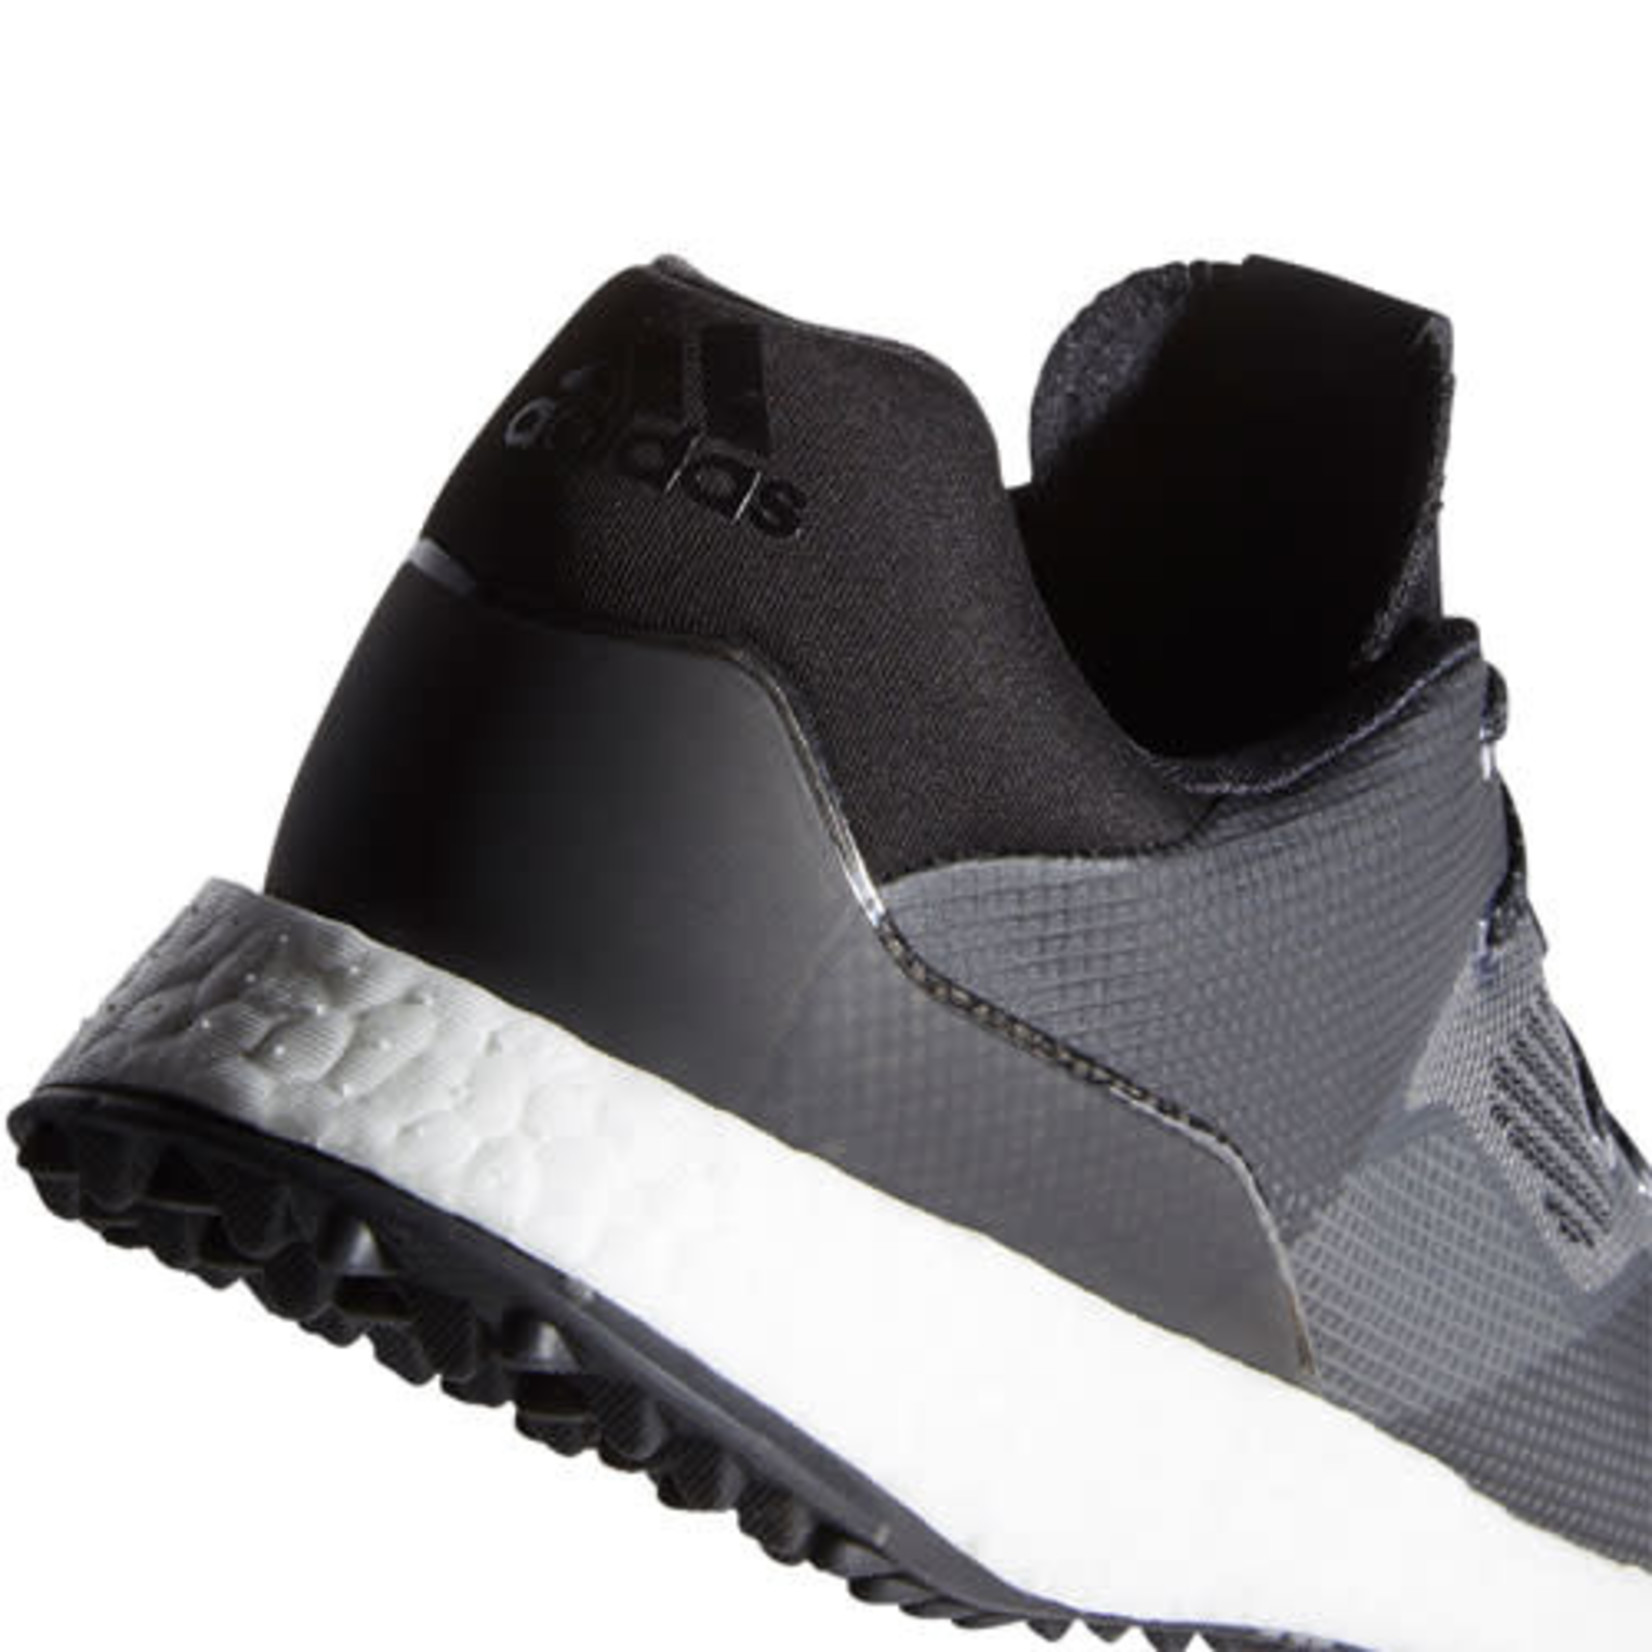 Adidas Men's Adidas Crossknit DPR Spikeless Golf Shoe Black